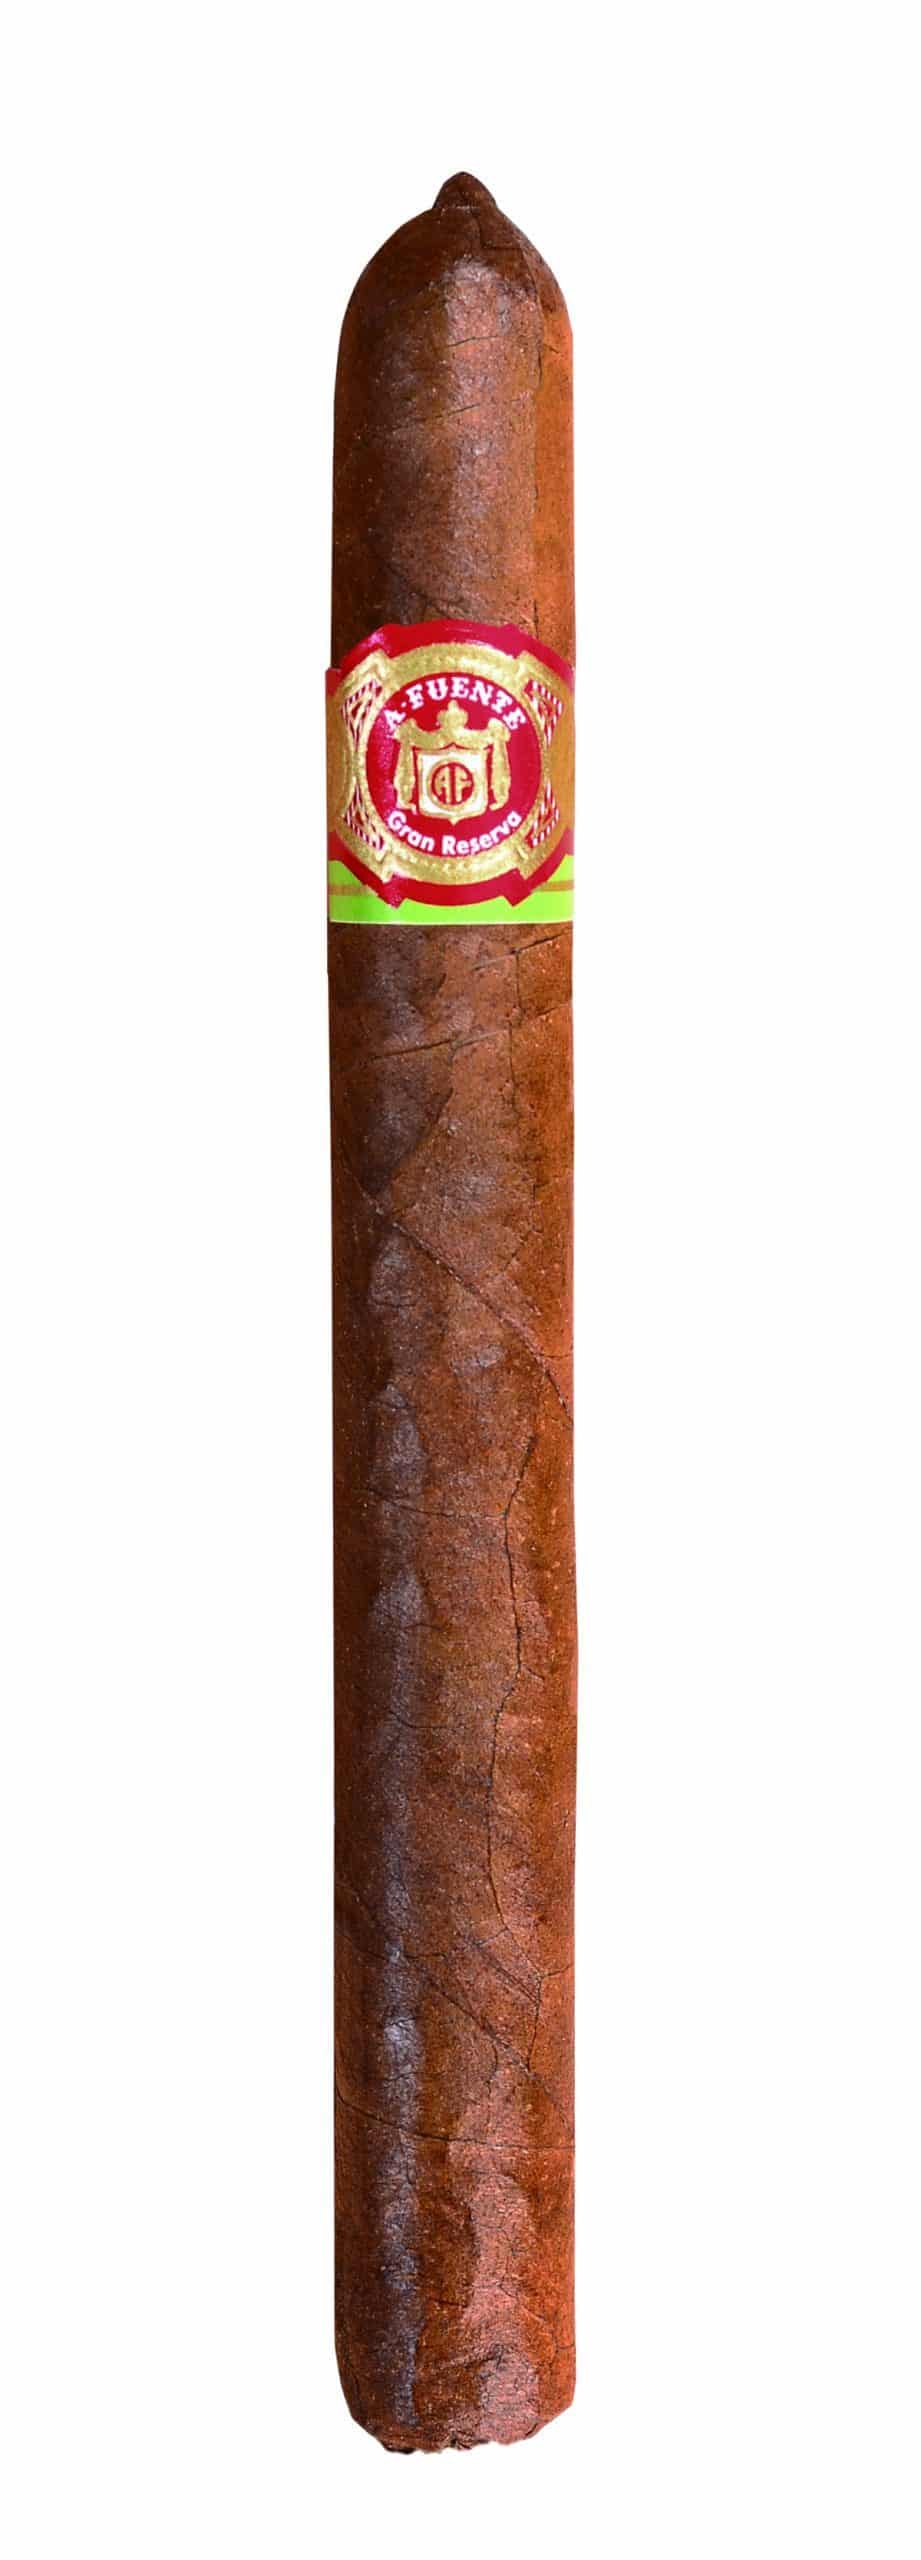 Single Arturo Fuente Gran Reserva Exquisitos Natural cigar